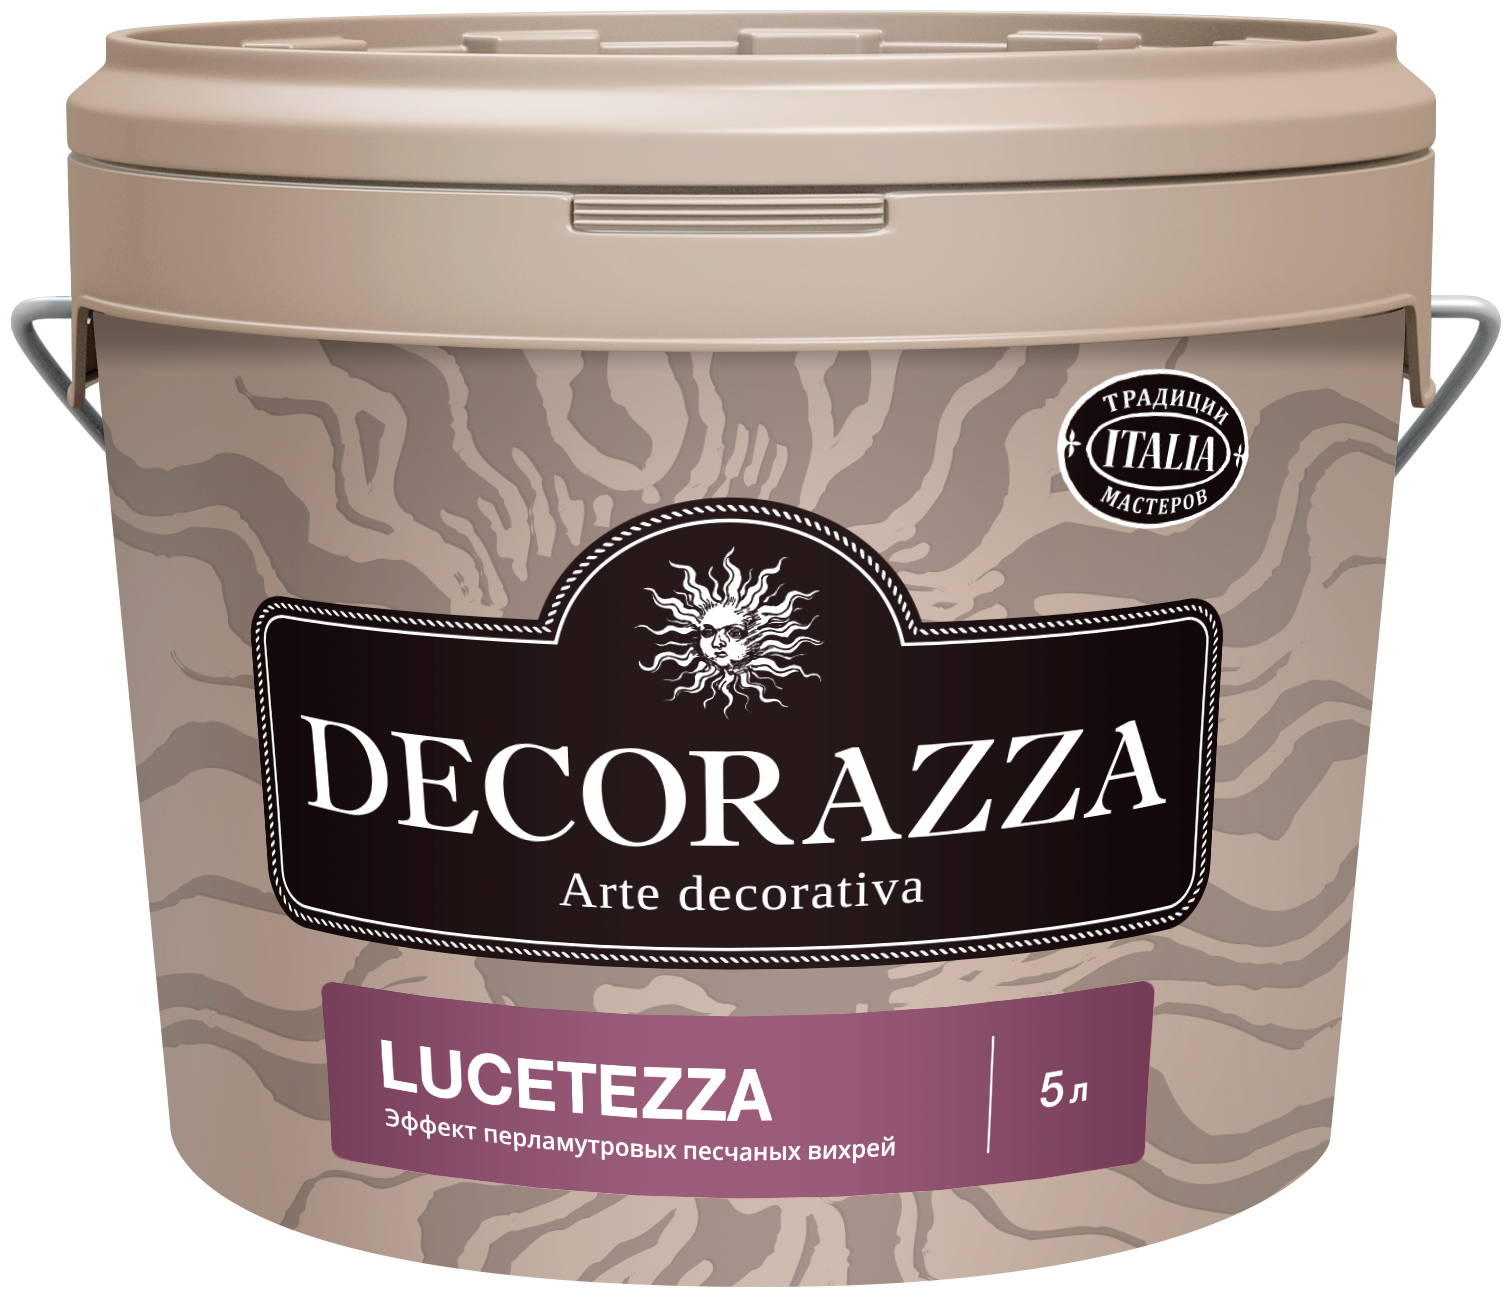 Декоративная штукатурка Decorazza Lucetezza Argento LC 001, 5 л